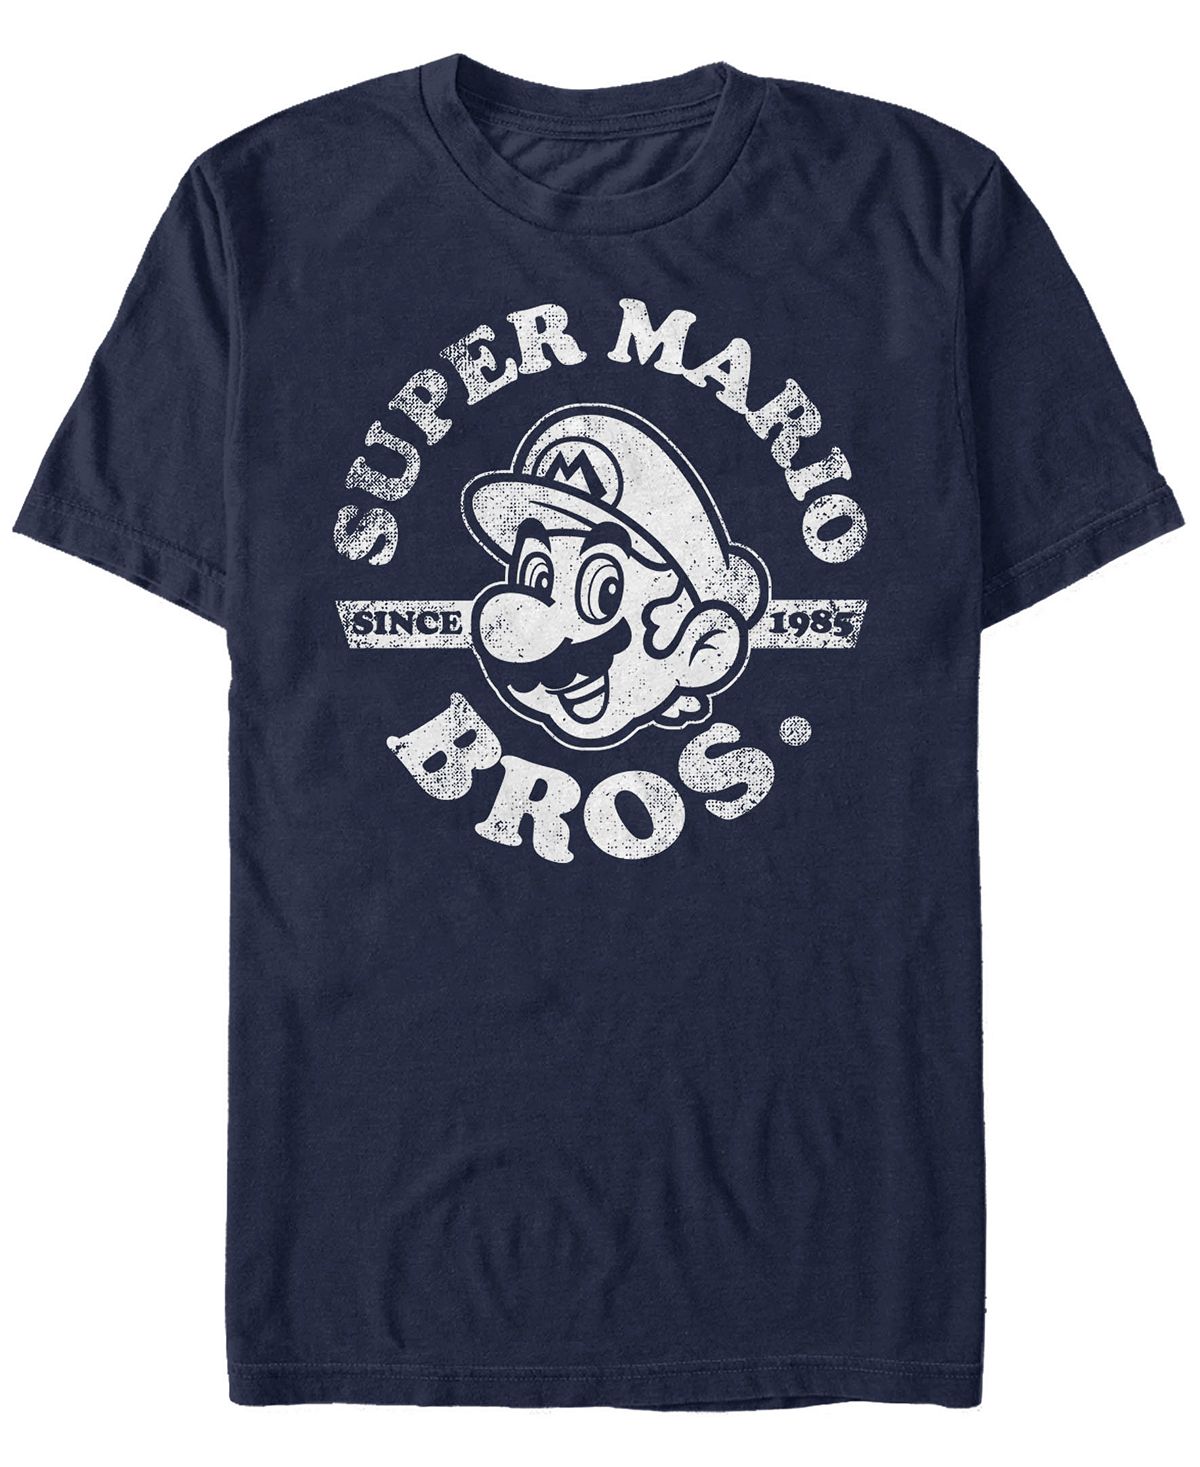 Мужская футболка nintendo super mario bros. с 1985 года с коротким рукавом Fifth Sun, синий рюкзак луиджи и йоши mario голубой 3